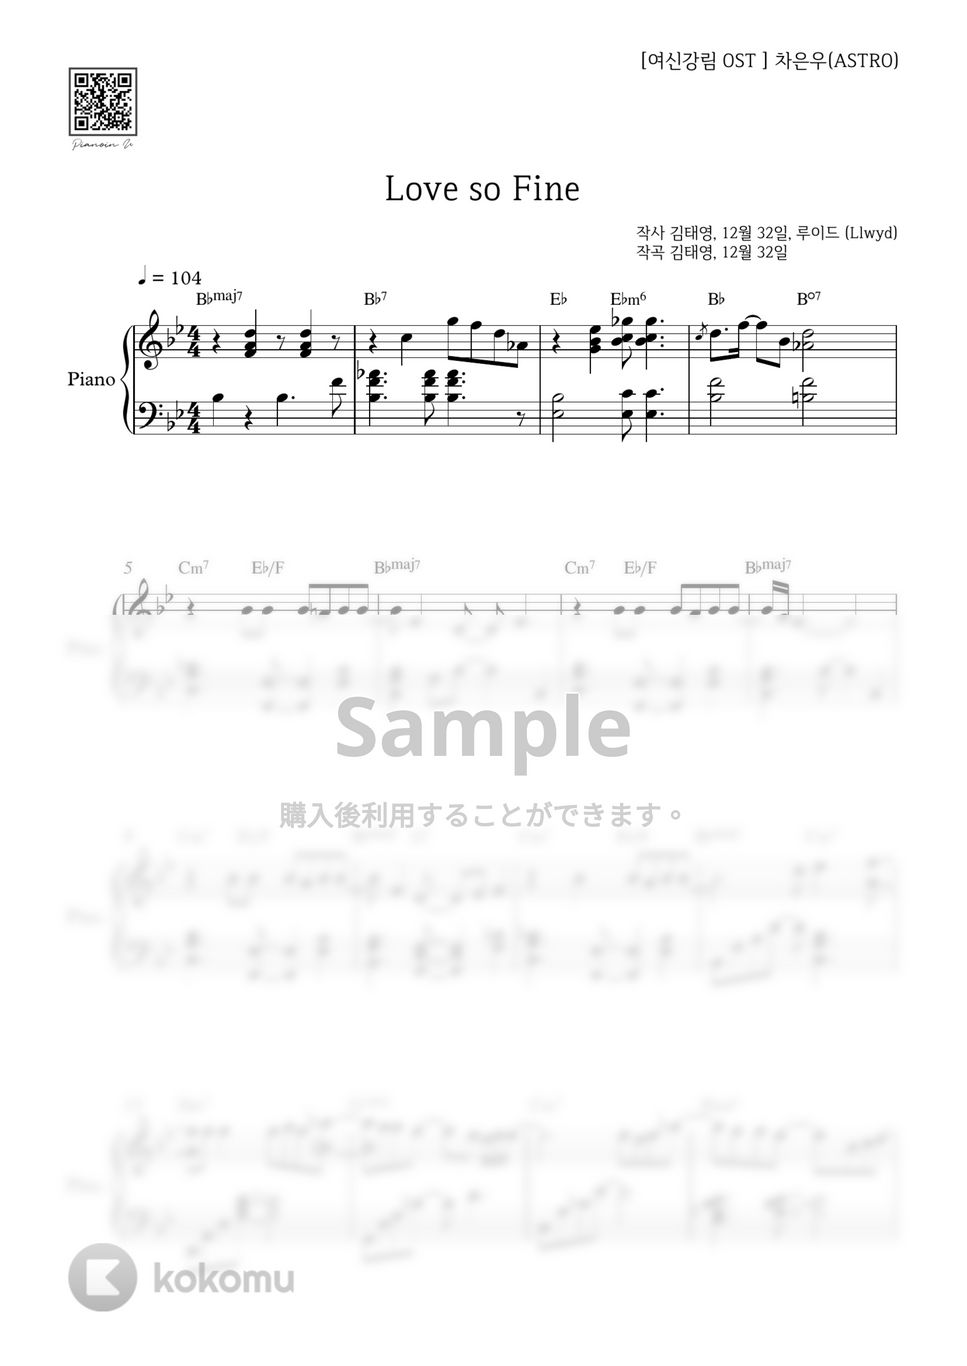 チャ・ウヌ - Love So Fine (女神降臨) by PIANOiNU